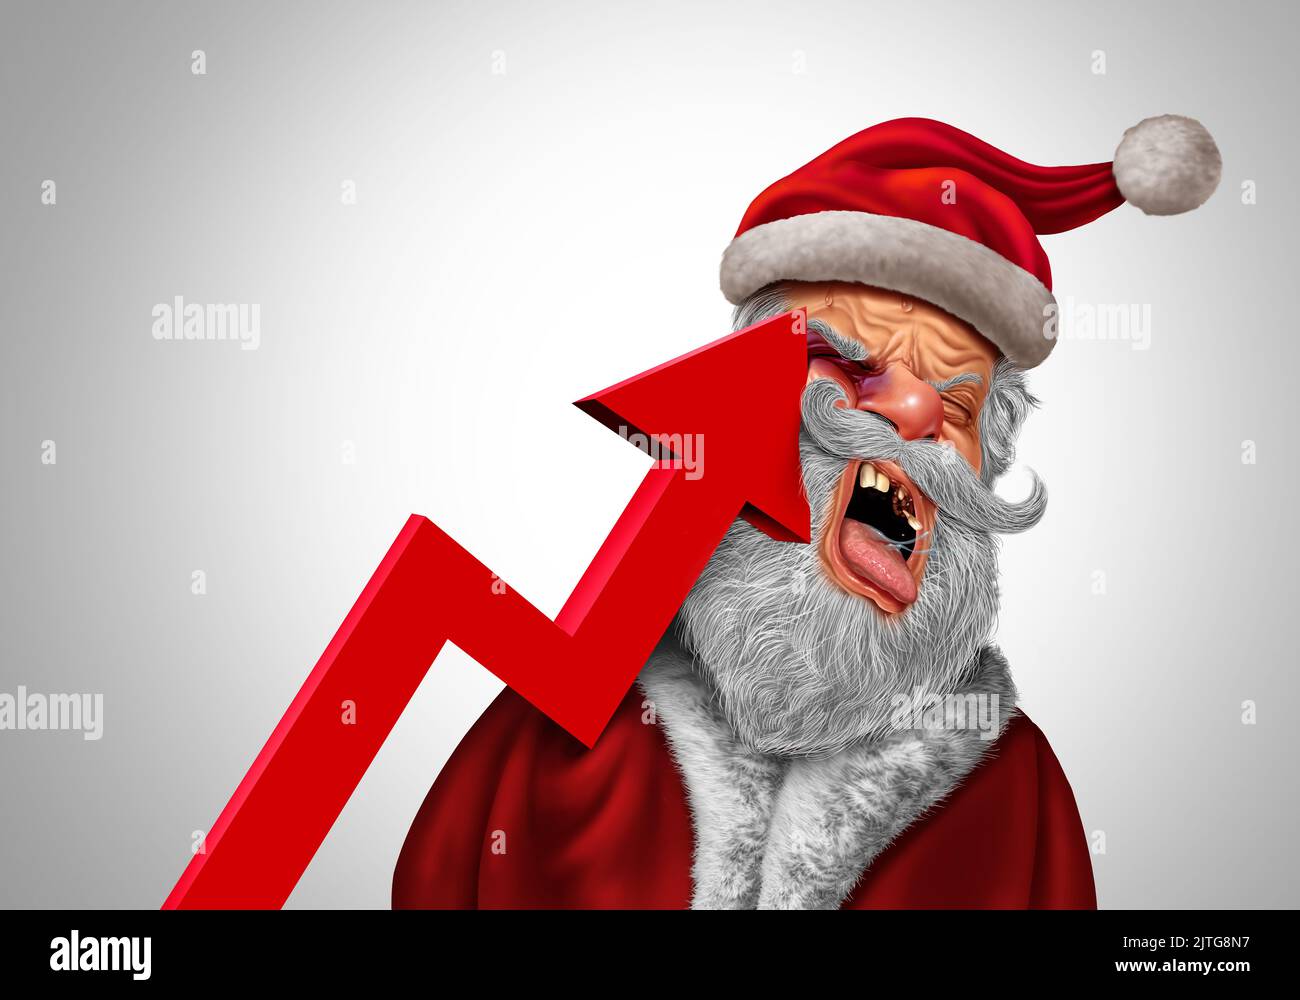 El concepto de dolor de la inflación de Navidad como Papá Noel siendo golpeado fuertemente por una flecha ascendente del gráfico financiero que representa precios crecientes del consumidor Foto de stock